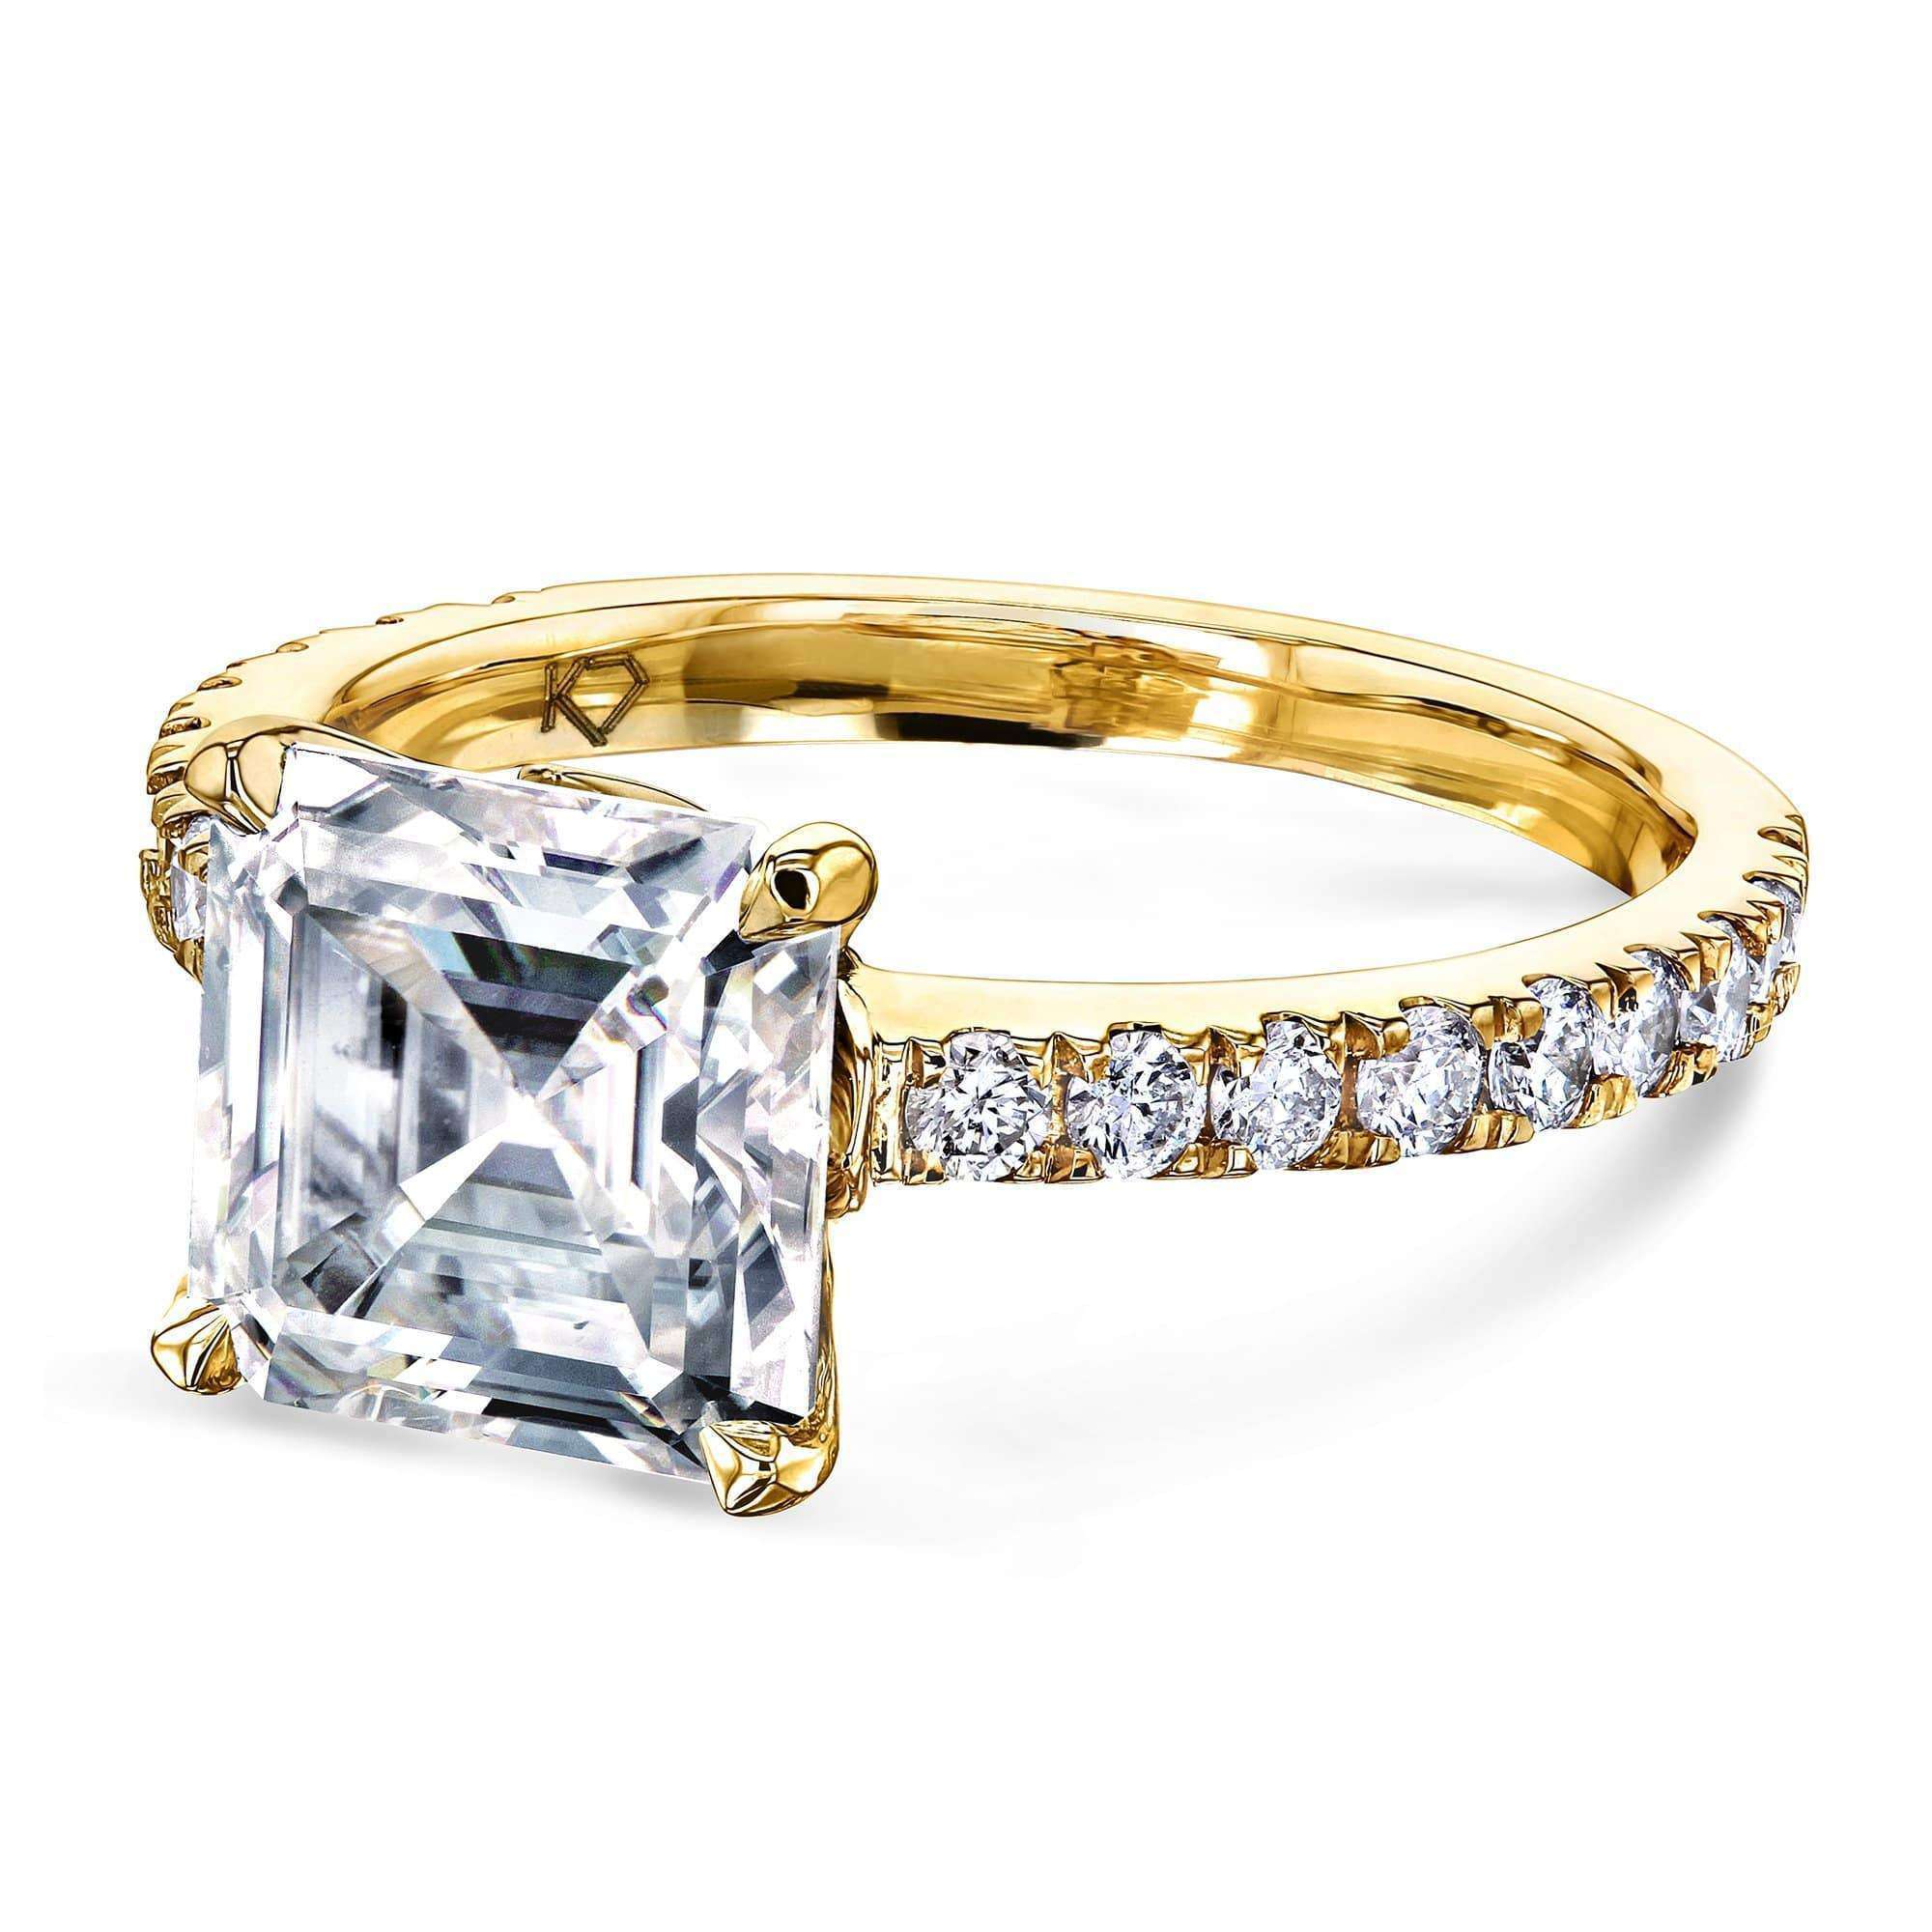 Royal Asscher jewelry cleaning kit - Royal Asscher Diamonds